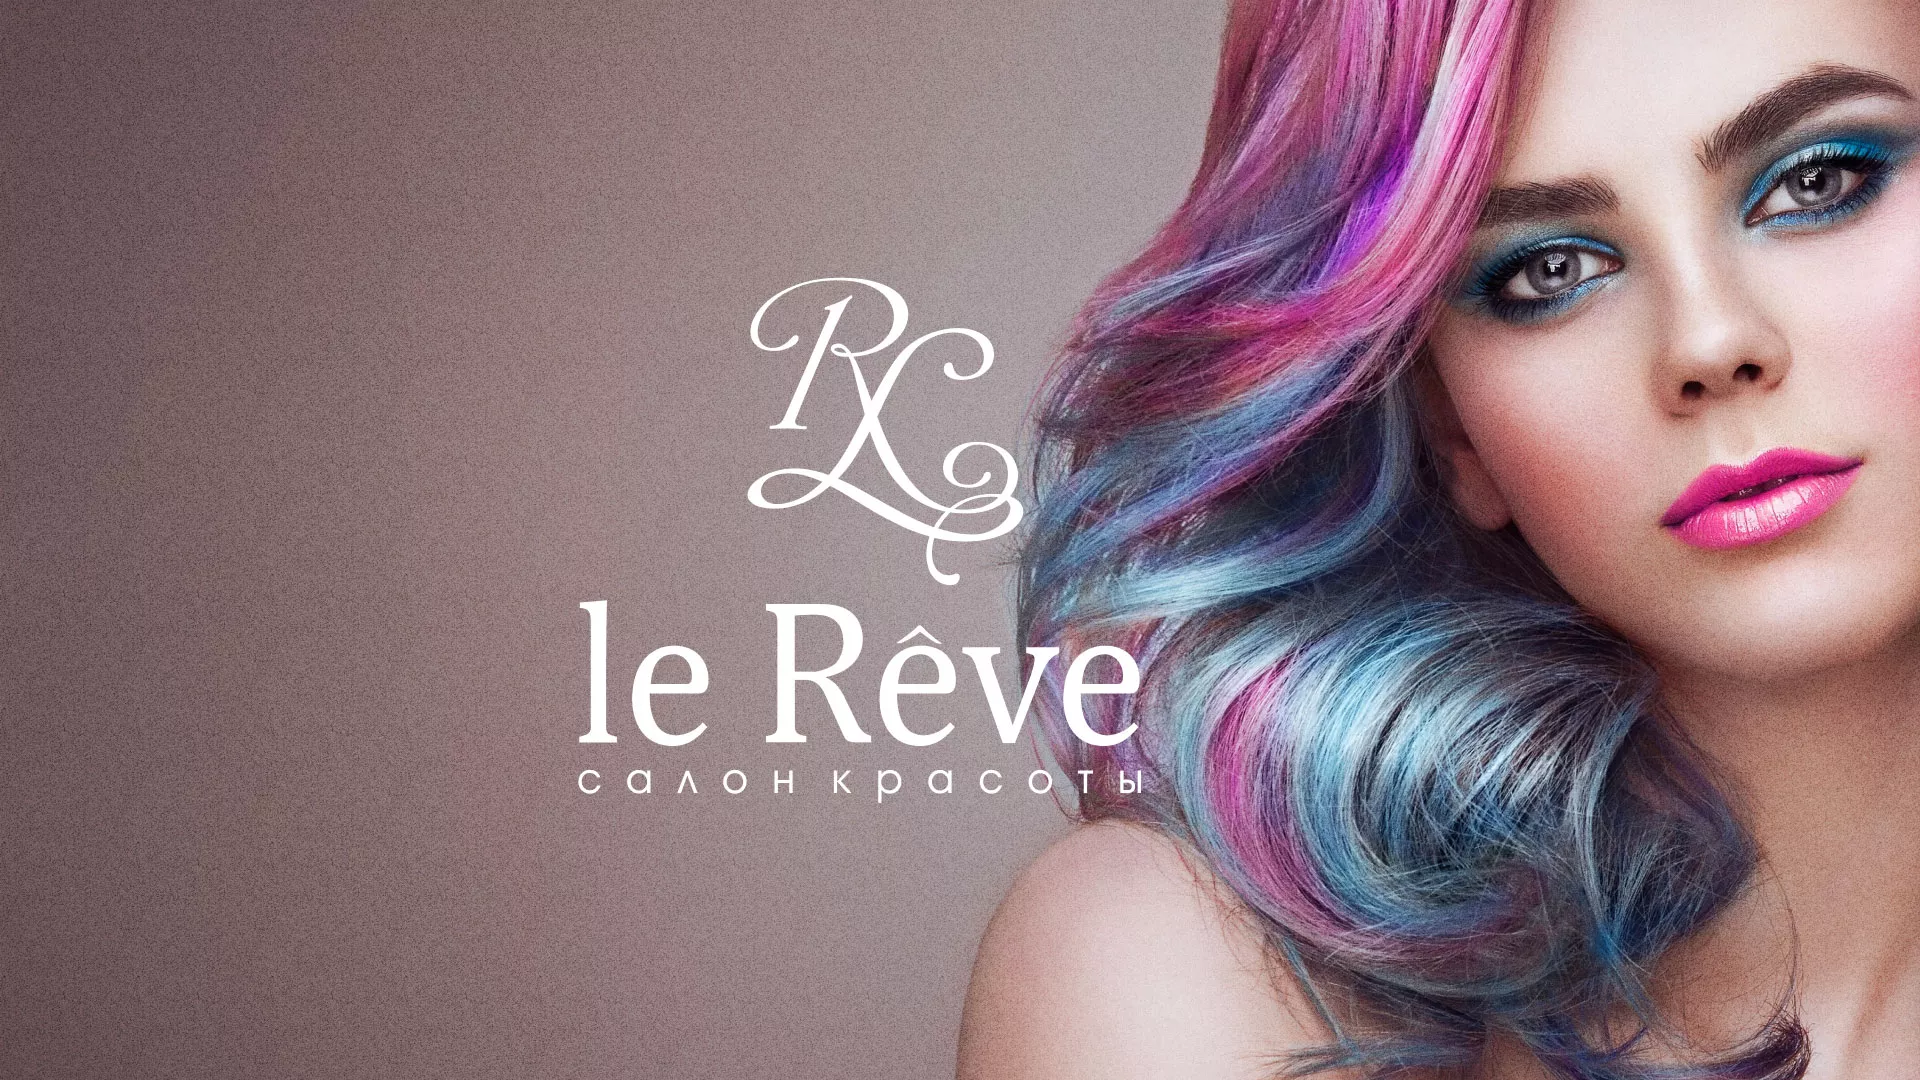 Создание сайта для салона красоты «Le Reve» в Тайге